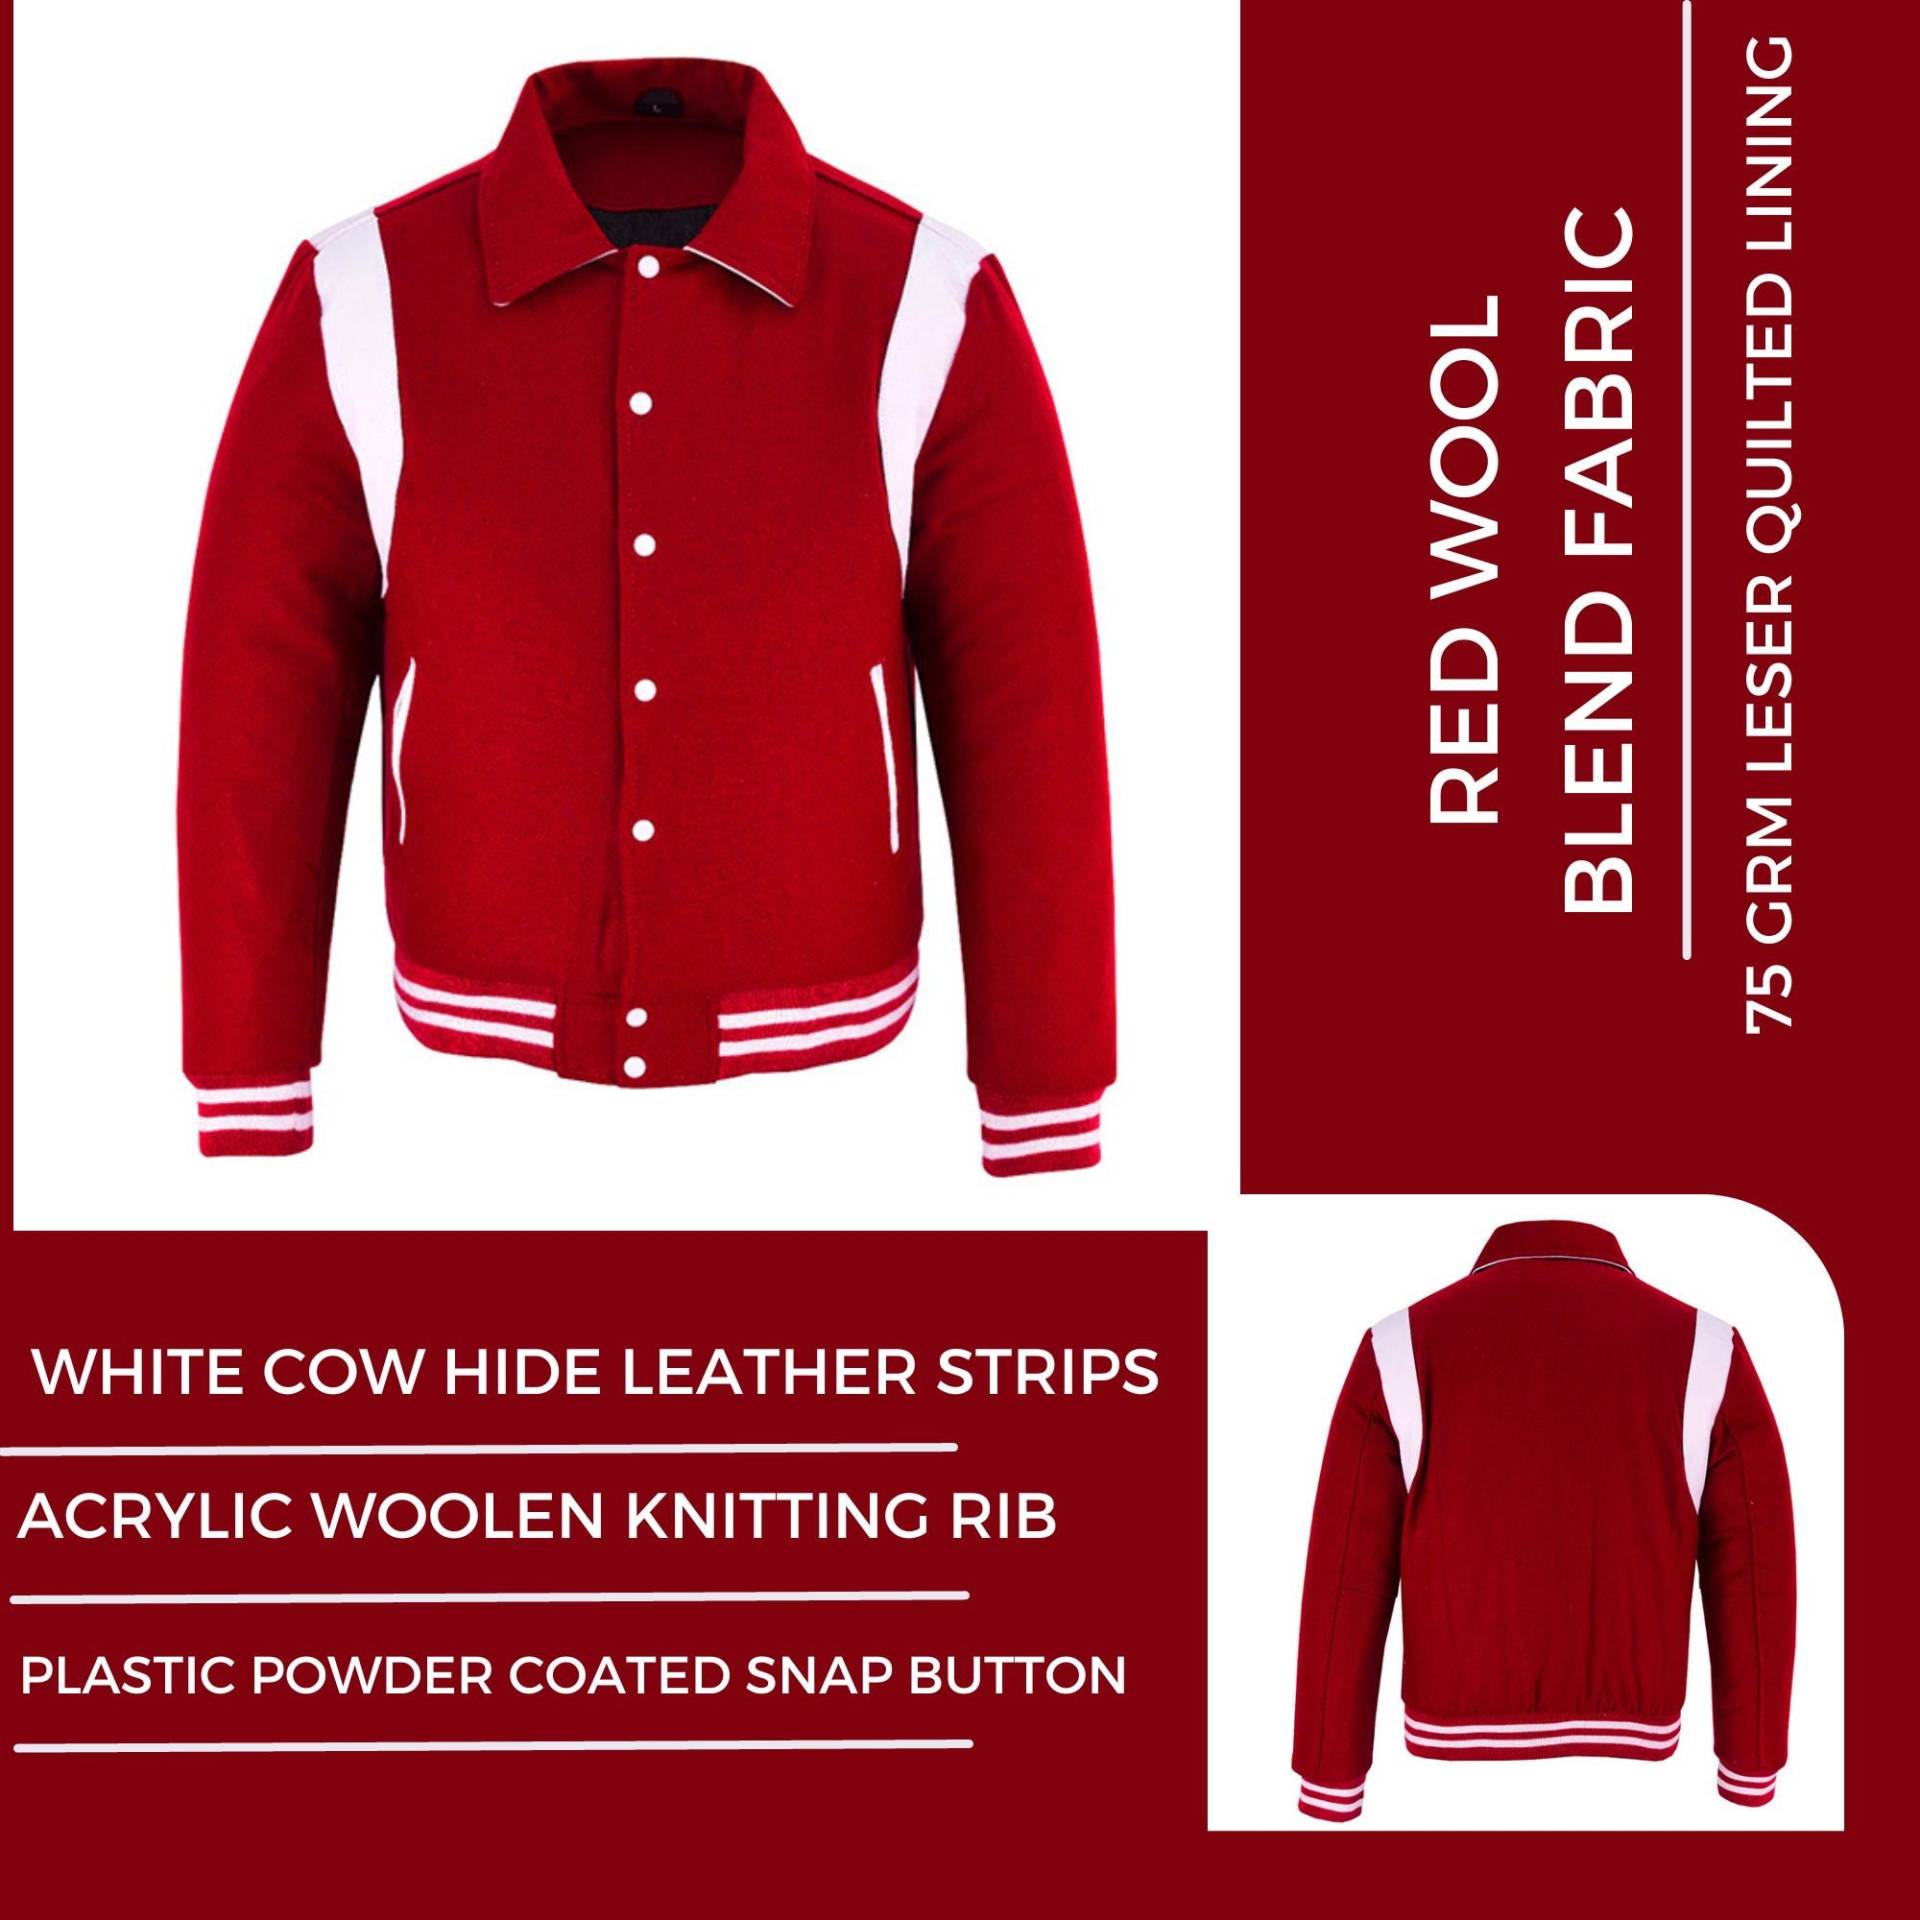 Varsity Baseball College Lettermen Retro Bomber Rote Wolle & Weiße Lederstreifen Jacke Mit Schwarz/Weiß Besatz von Dawoodimpex